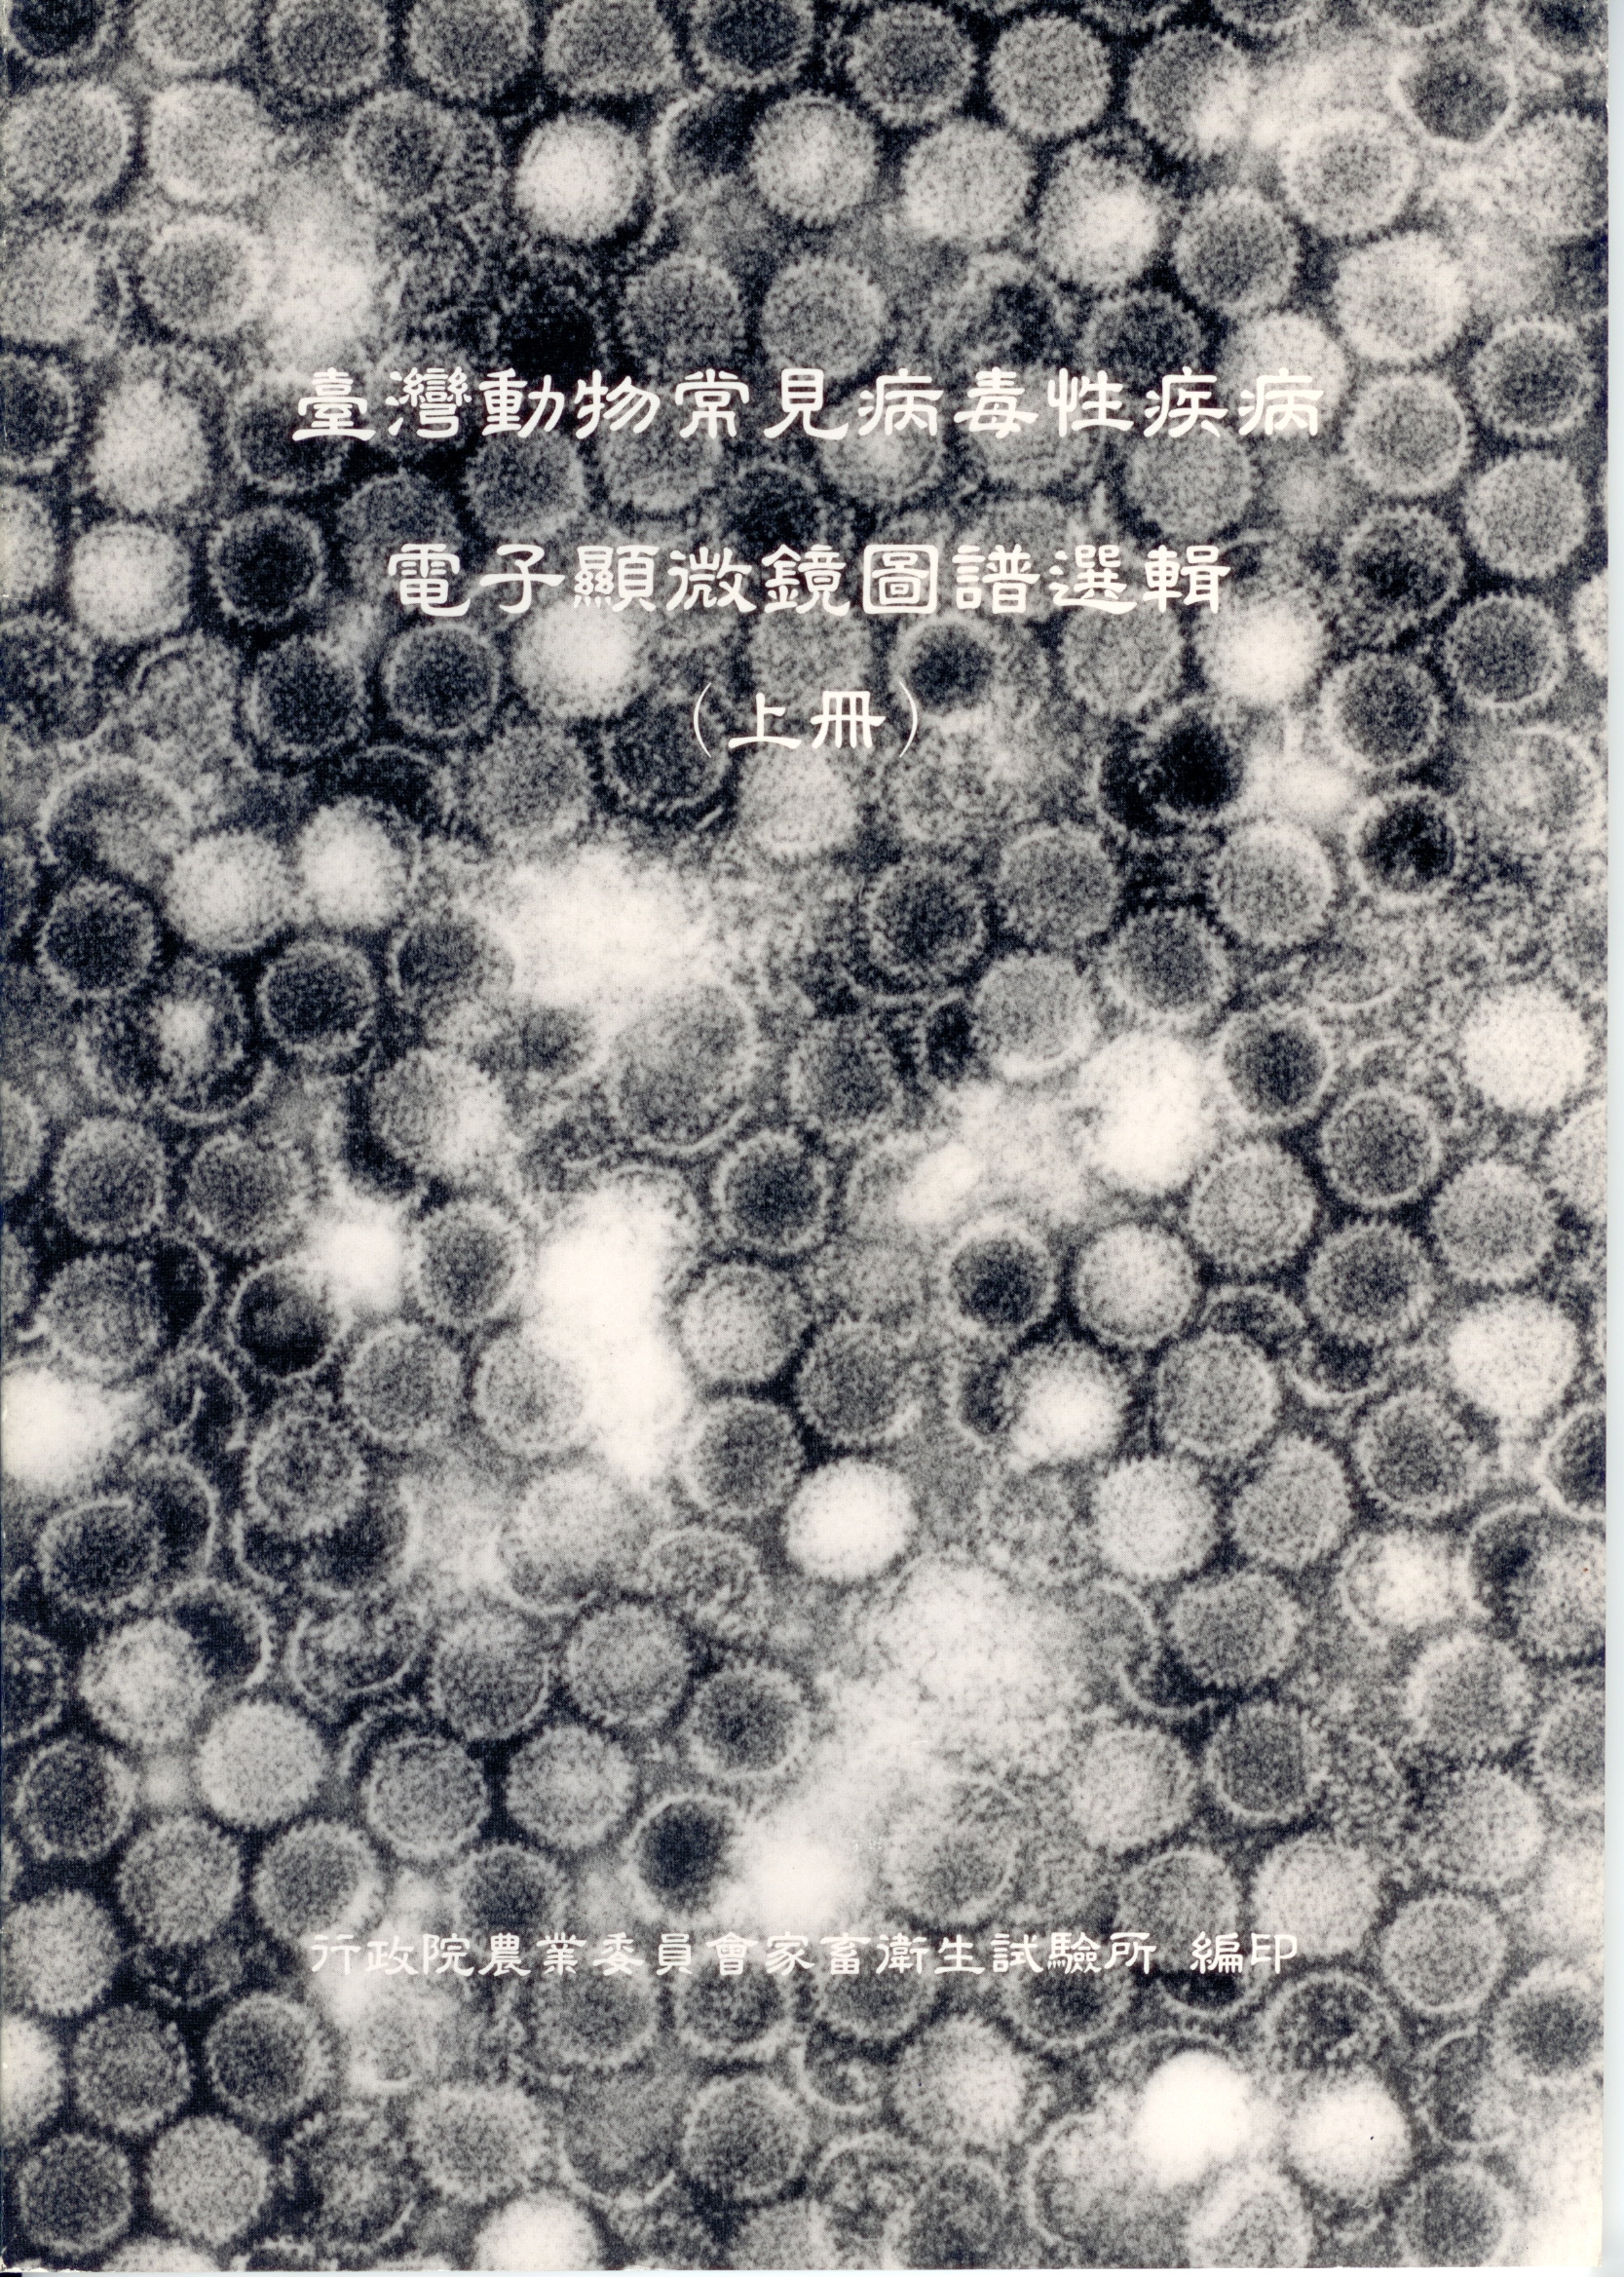 台灣動物常見病毒性疾病 電子顯微鏡圖譜選輯(上冊)